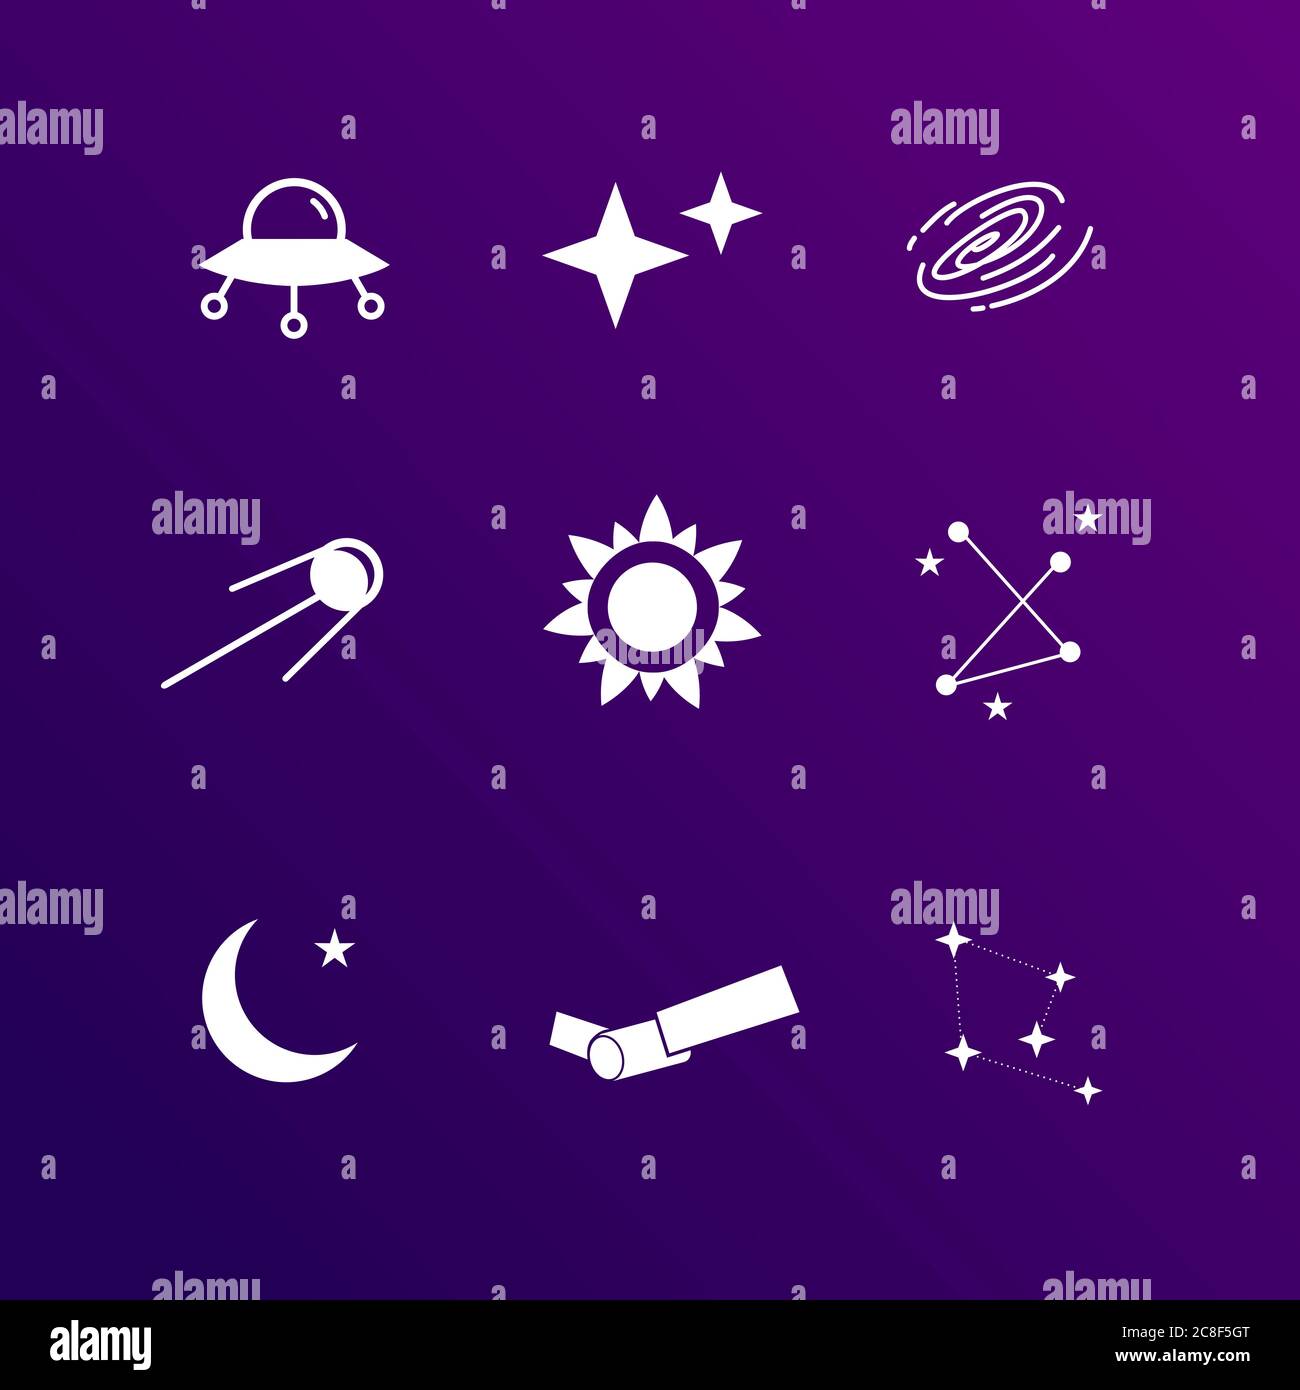 astronomie Symbol Set Vektor, gehören UFO, Sterne, schwarzes Loch, satelitte, Sonne, Umriss mit Sternen, cresent Mond, flaches Design einfach Stock Vektor